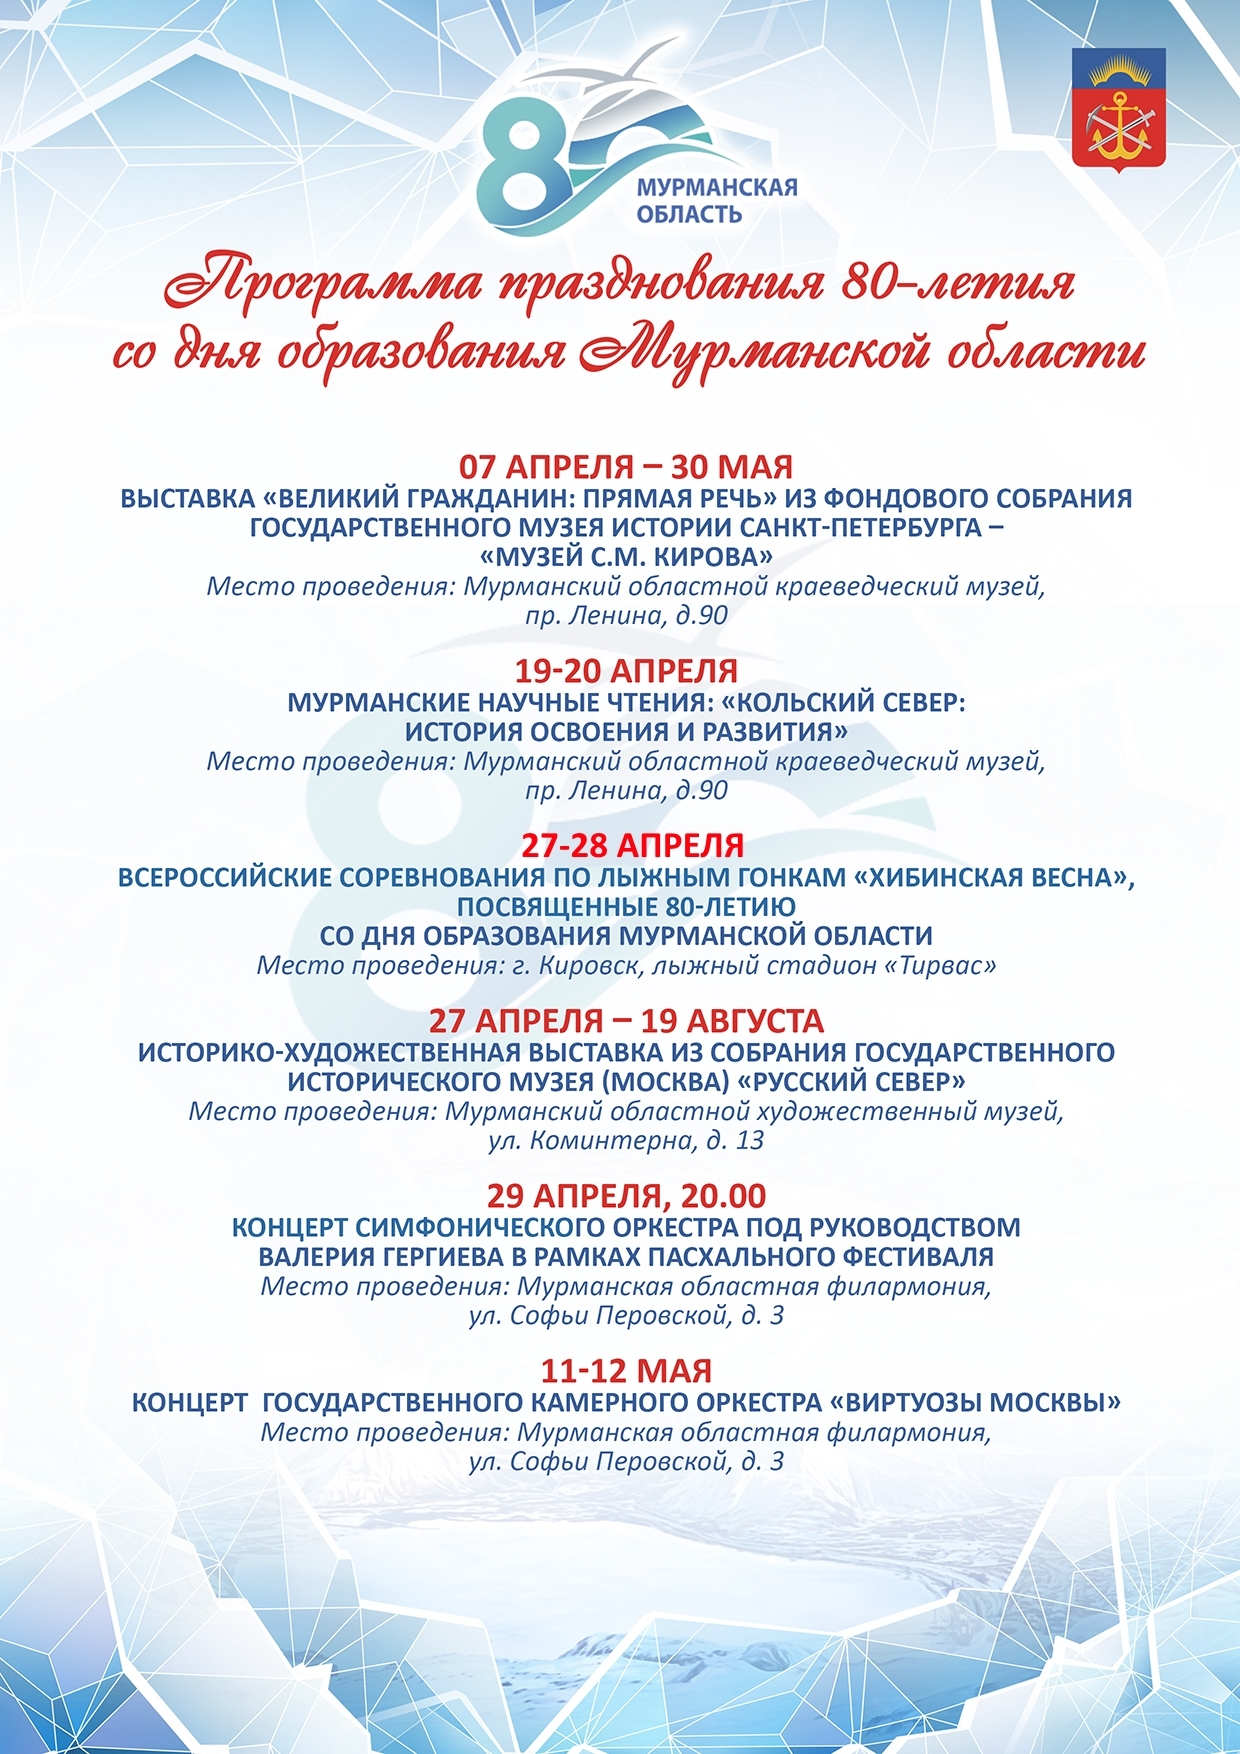 Программа празднования 80-летия Мурманской области